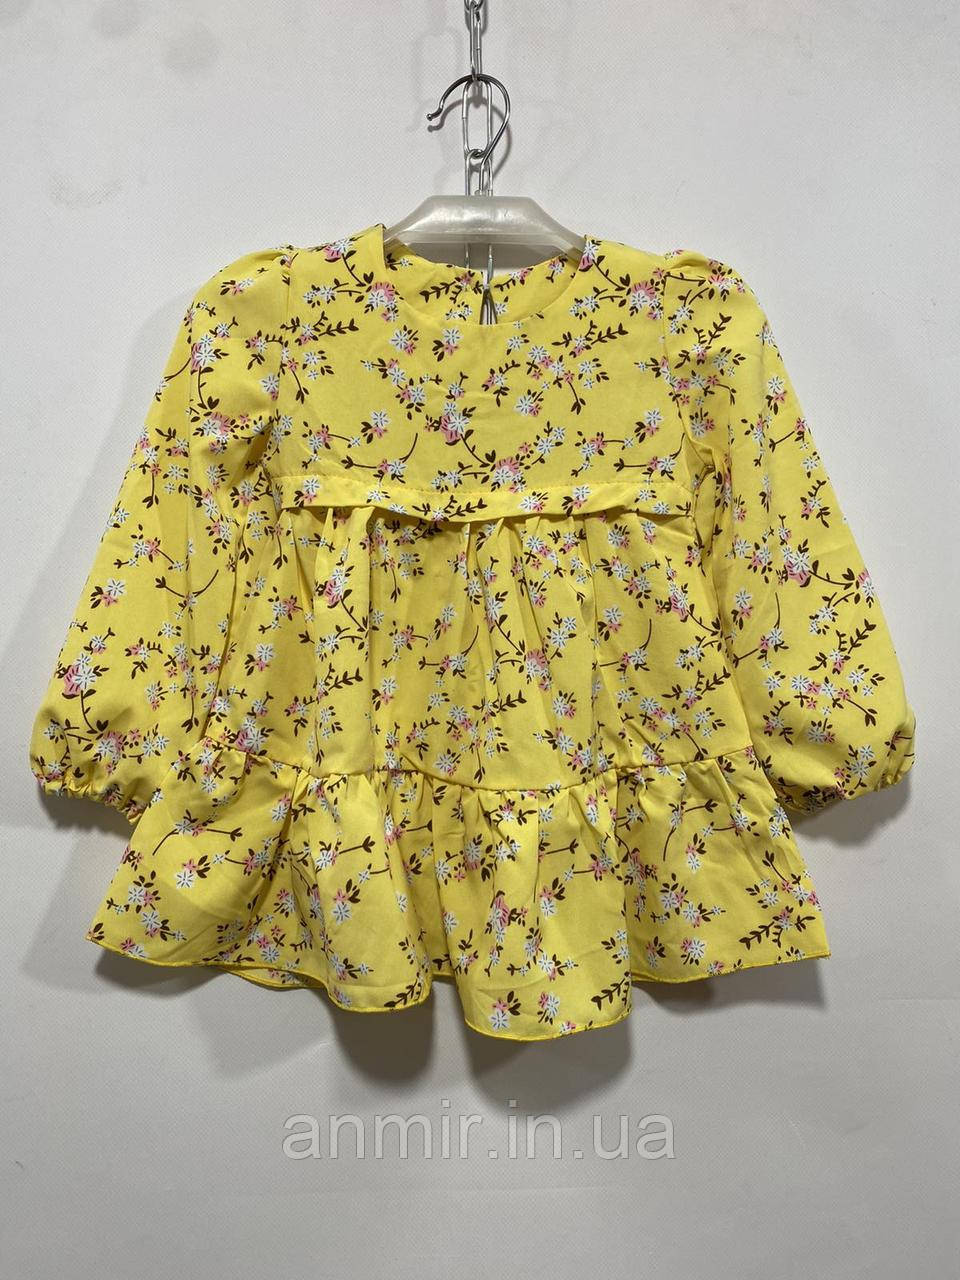 Плаття дитяче для дівчинки софт Квіти 2-5 років, колір уточнюйте під час замовлення